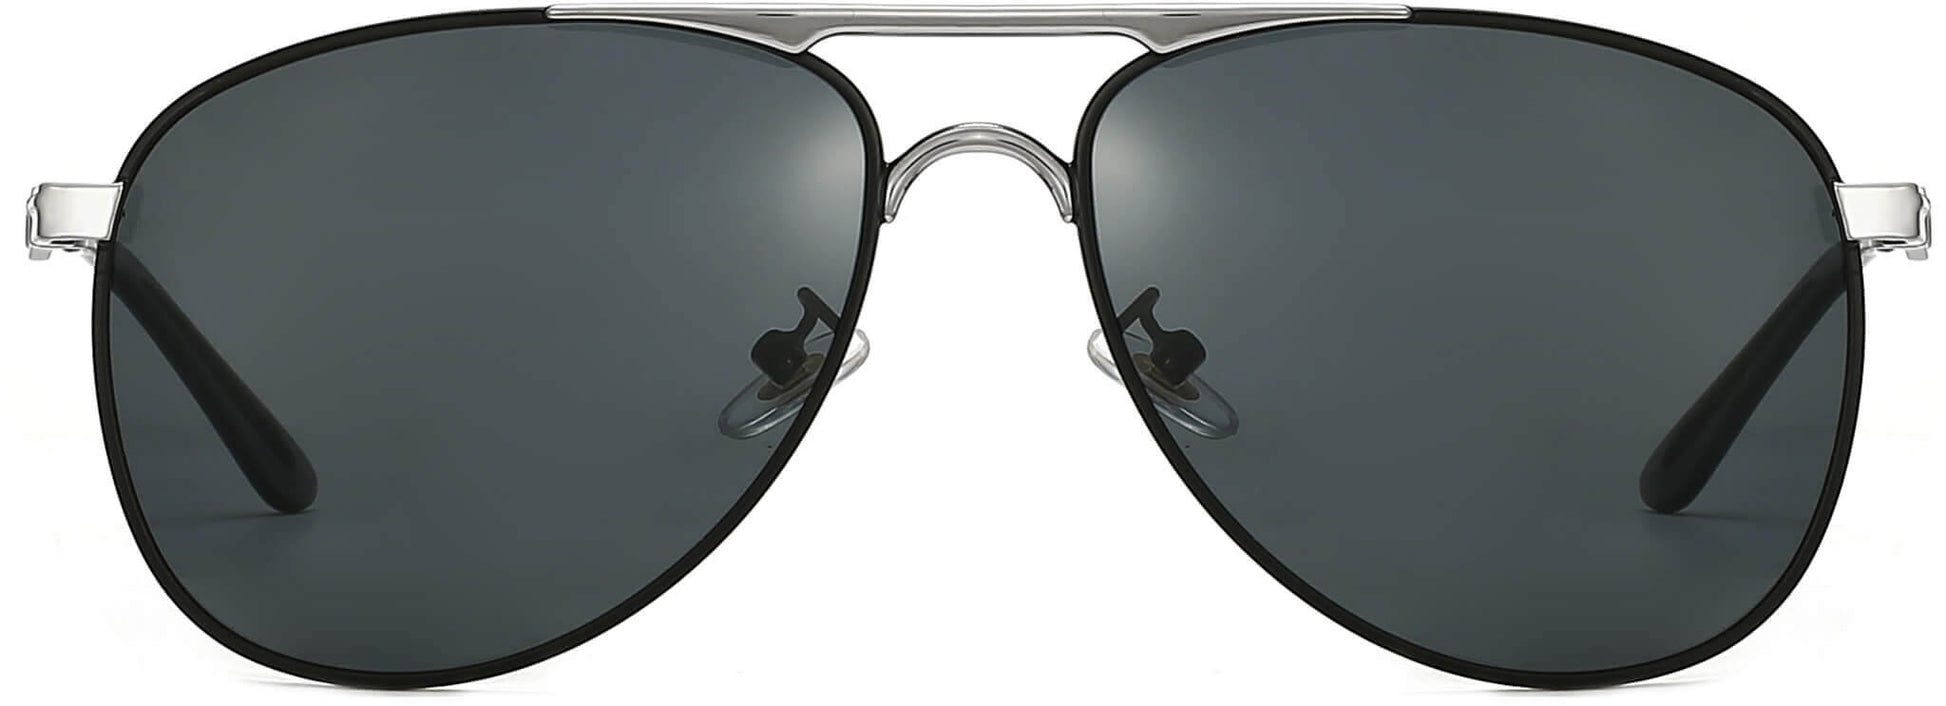 Hiram Black Stainless steel Sunglasses from ANRRI